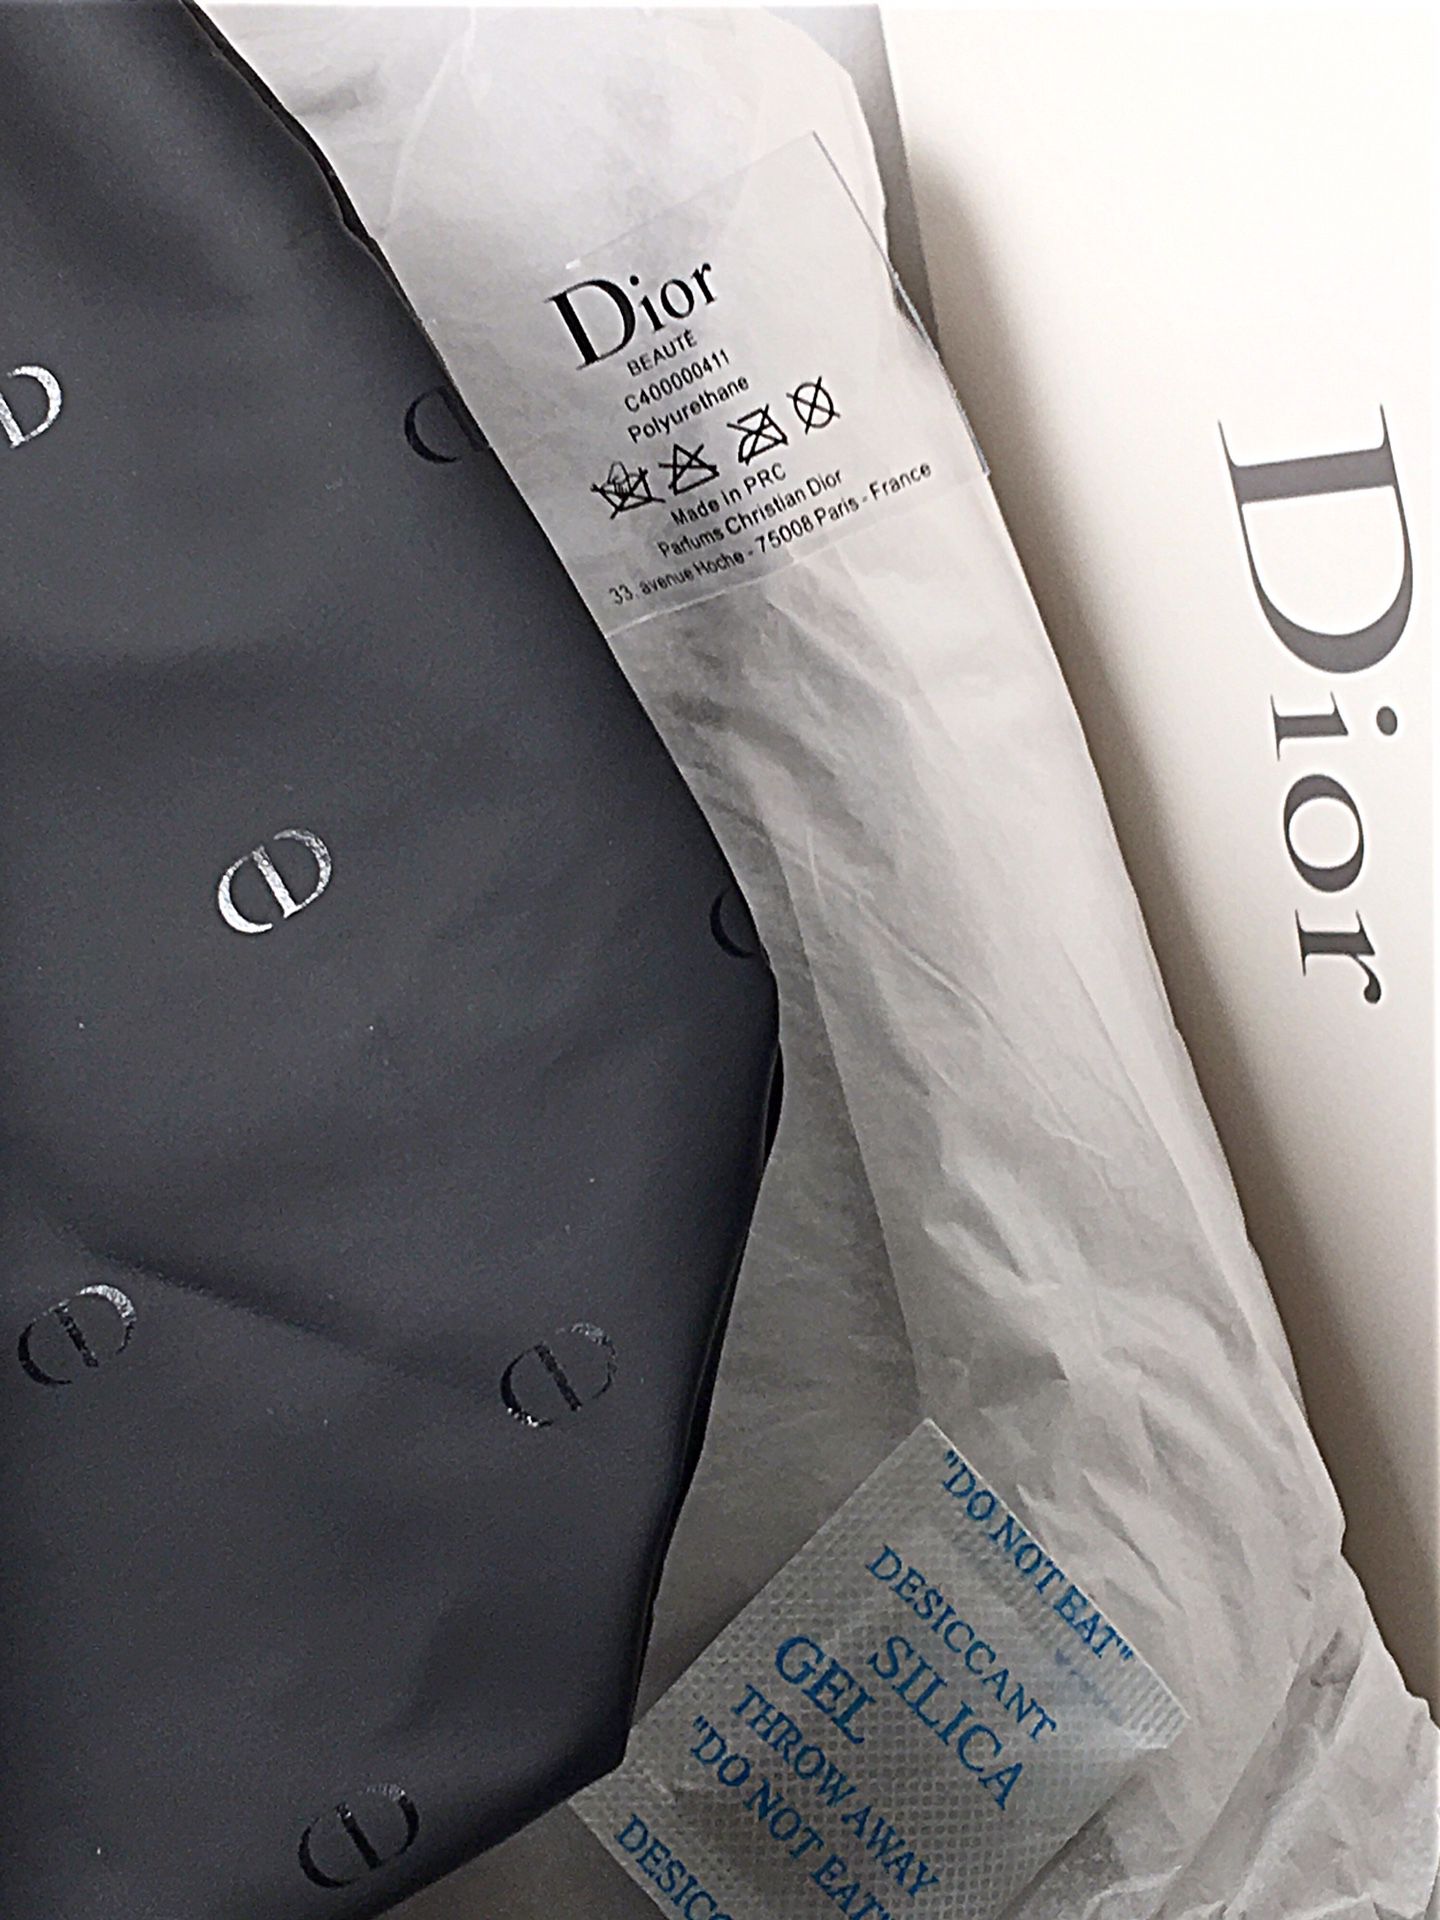 Le siège des parfums Christian Dior va s'installer à Neuilly - Le Parisien